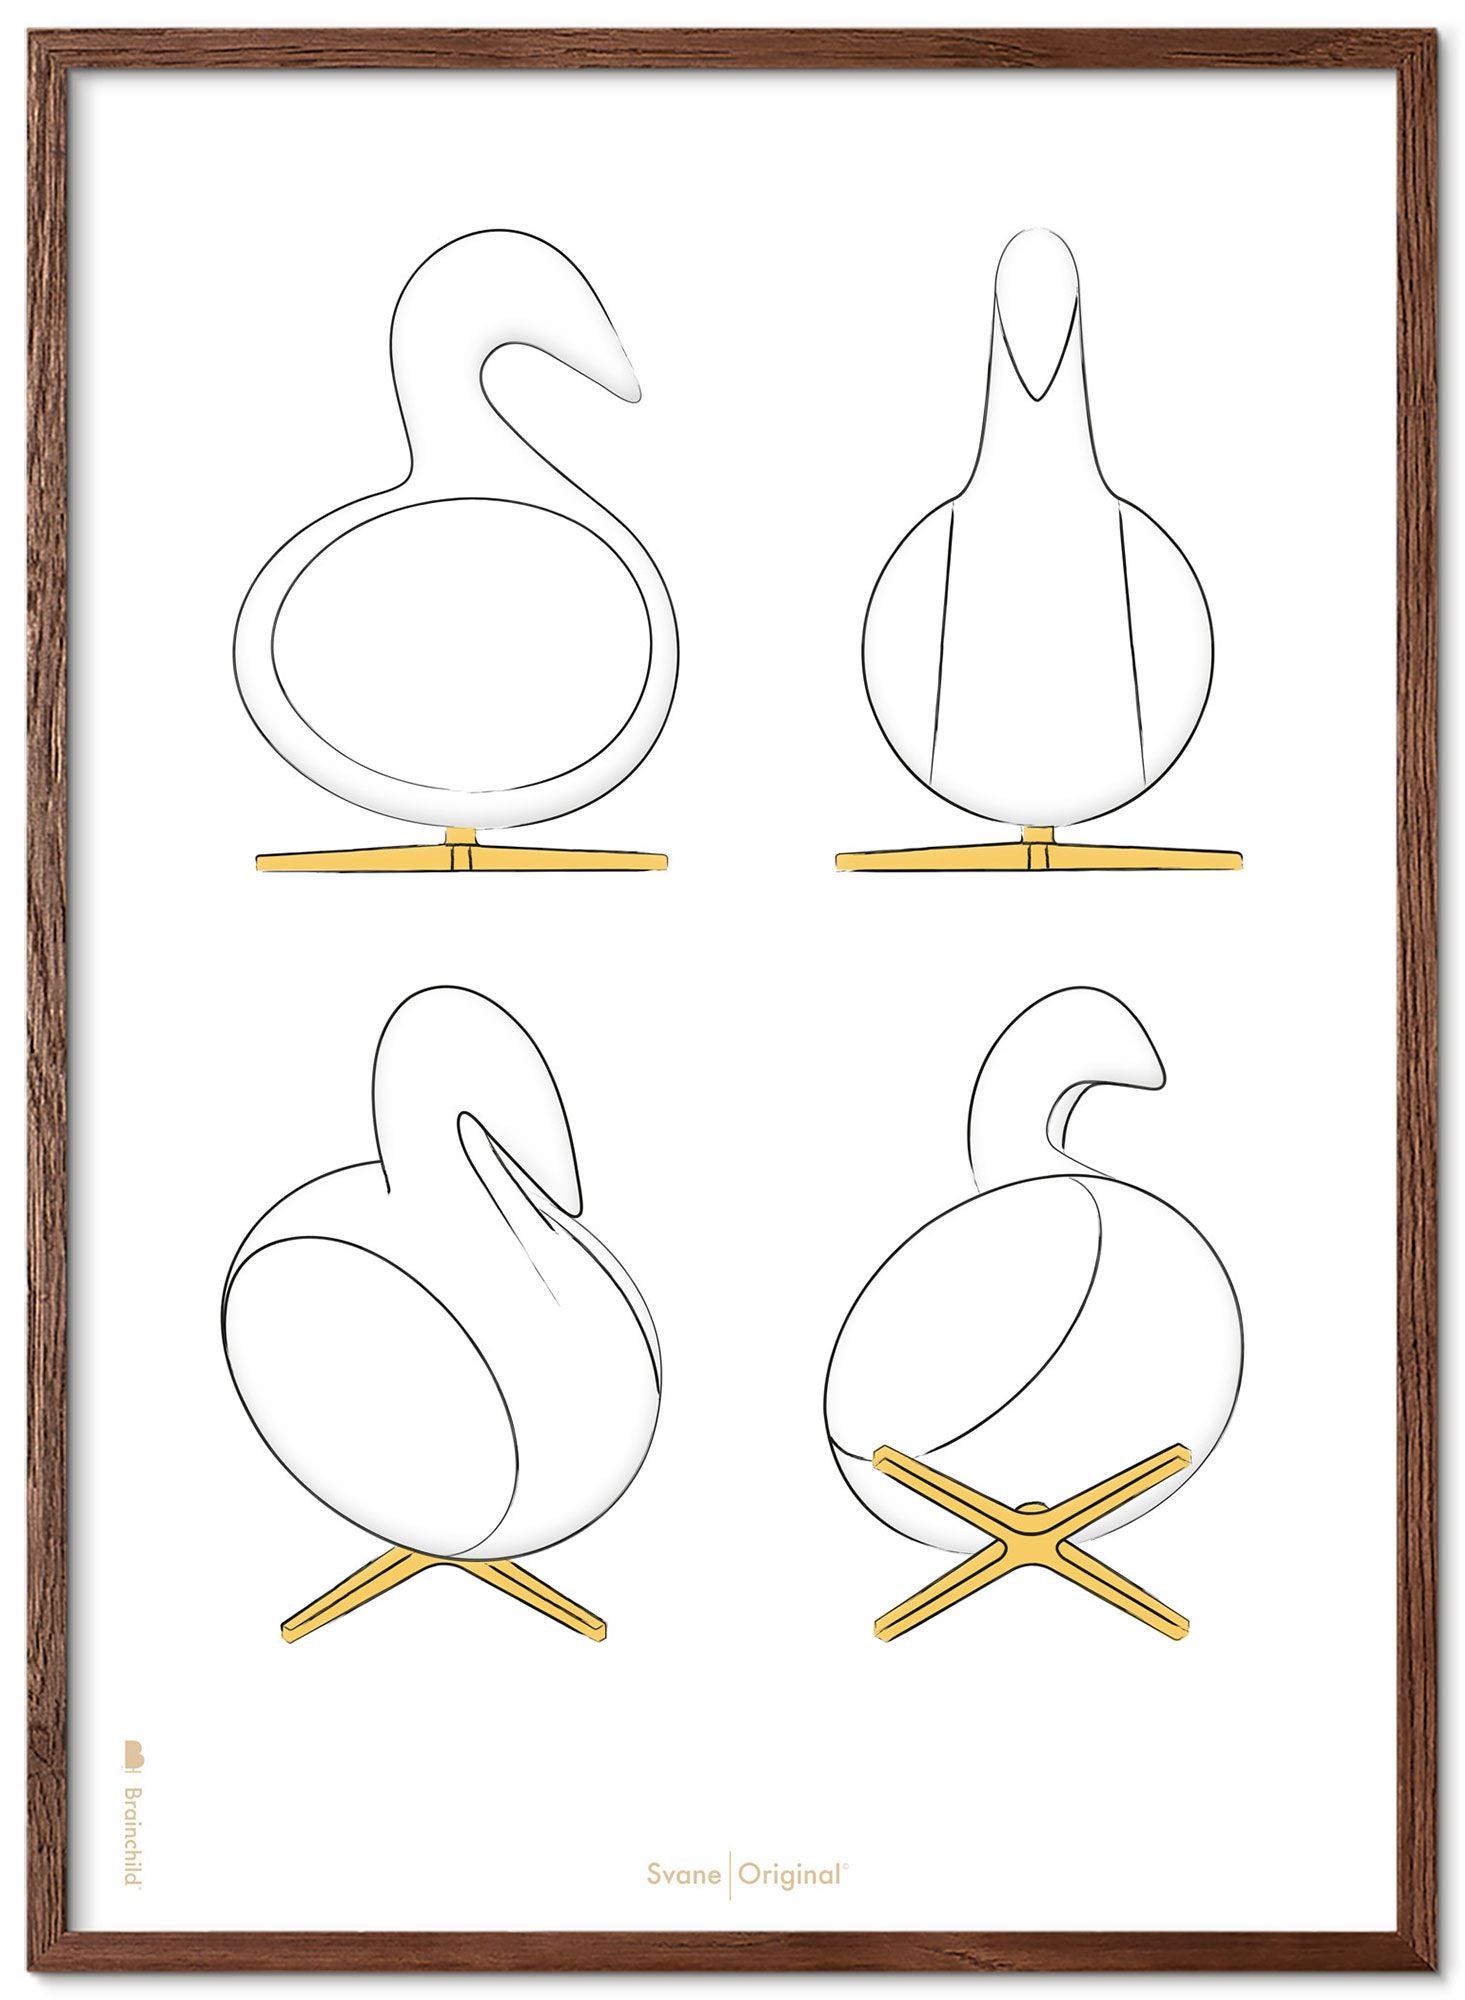 Brainchild Swan Design Sketches Poster Frame Made Of Dark Wood 50x70 Cm, White Background